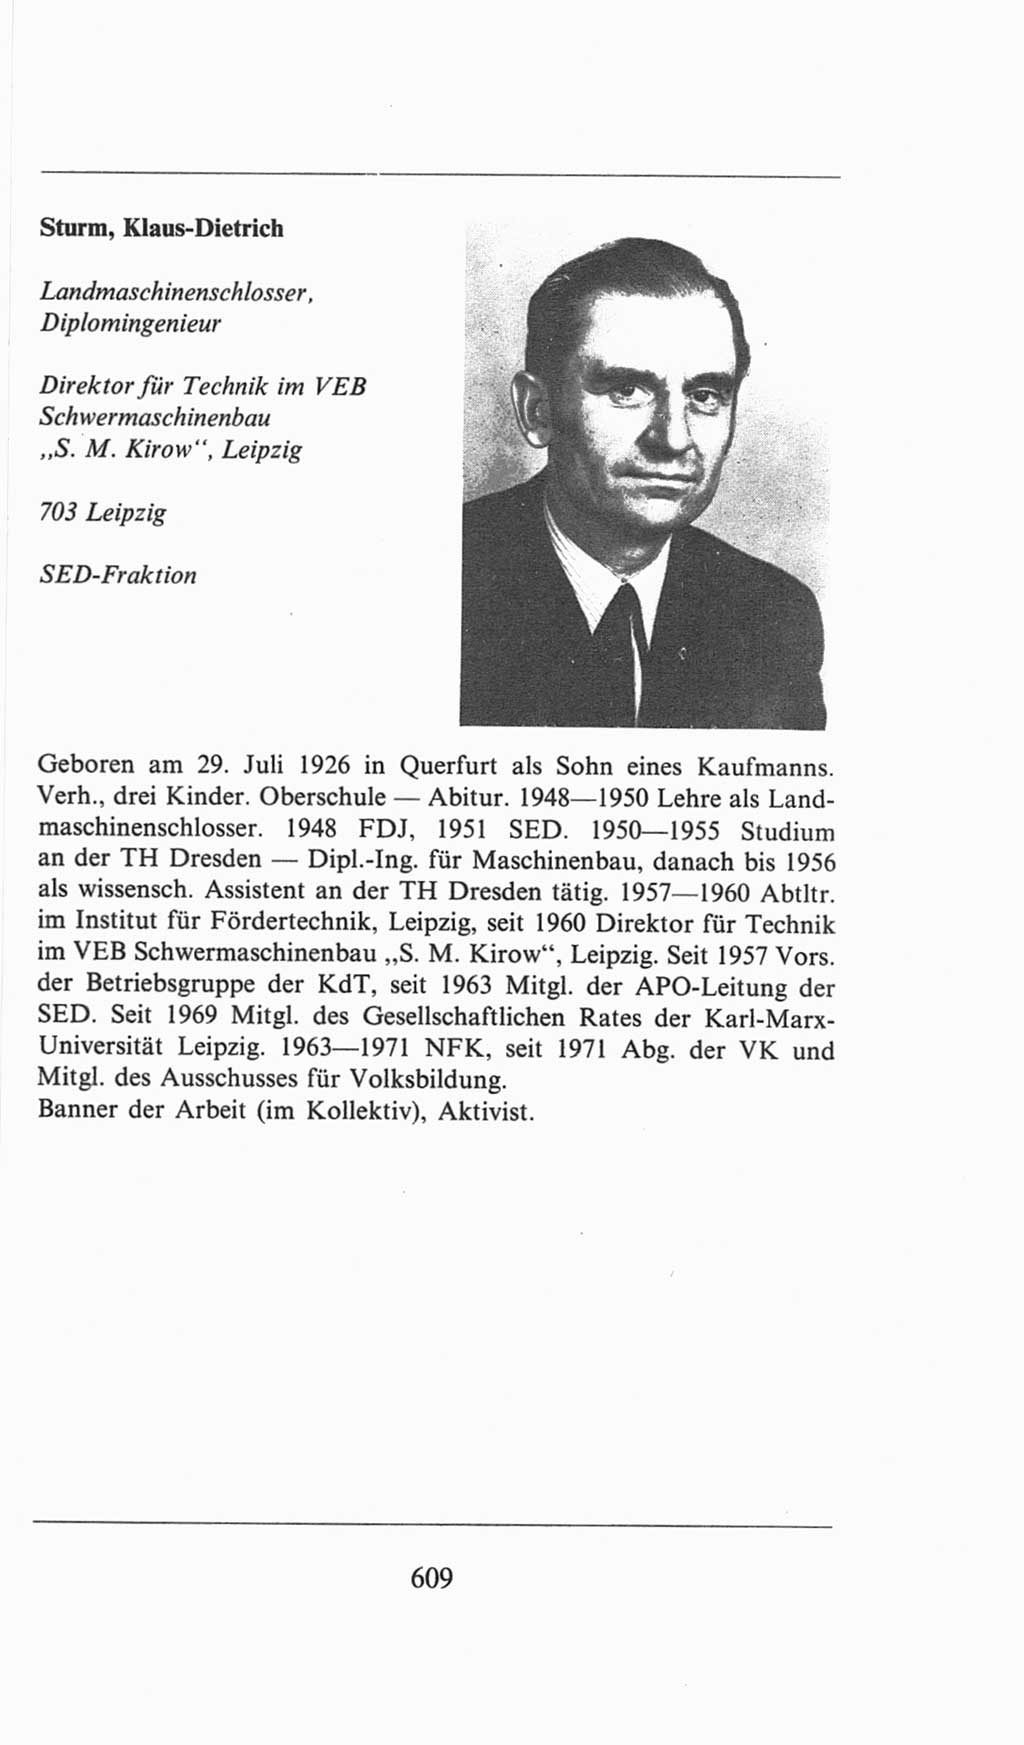 Volkskammer (VK) der Deutschen Demokratischen Republik (DDR), 6. Wahlperiode 1971-1976, Seite 609 (VK. DDR 6. WP. 1971-1976, S. 609)